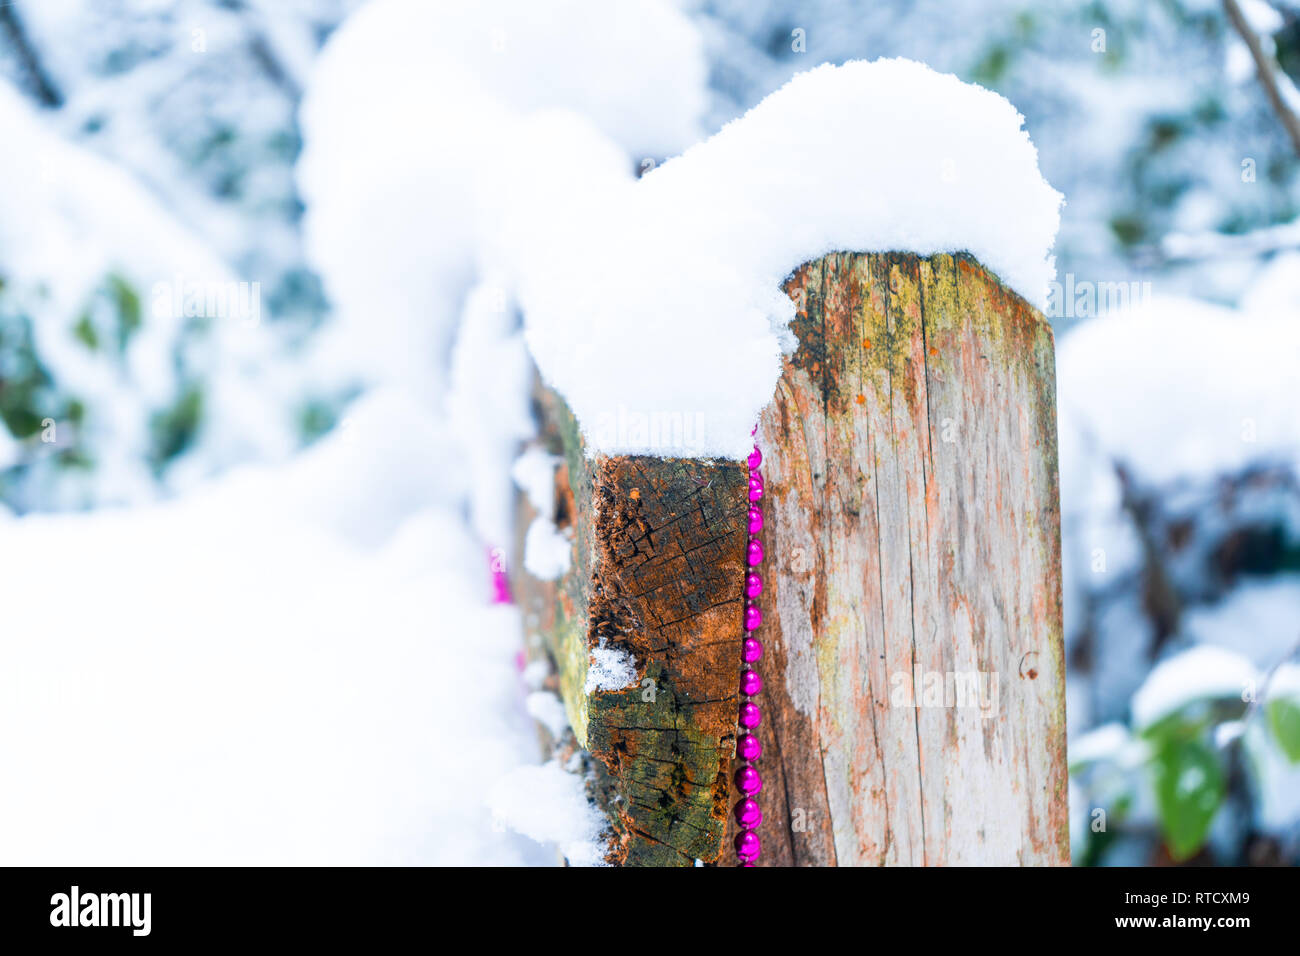 Cordon rose garland drapé sur un banc en bois dans une forêt enneigée, représentant un décor de Noël, temps d'hiver, fêtes, et Winter Wonderland. Banque D'Images